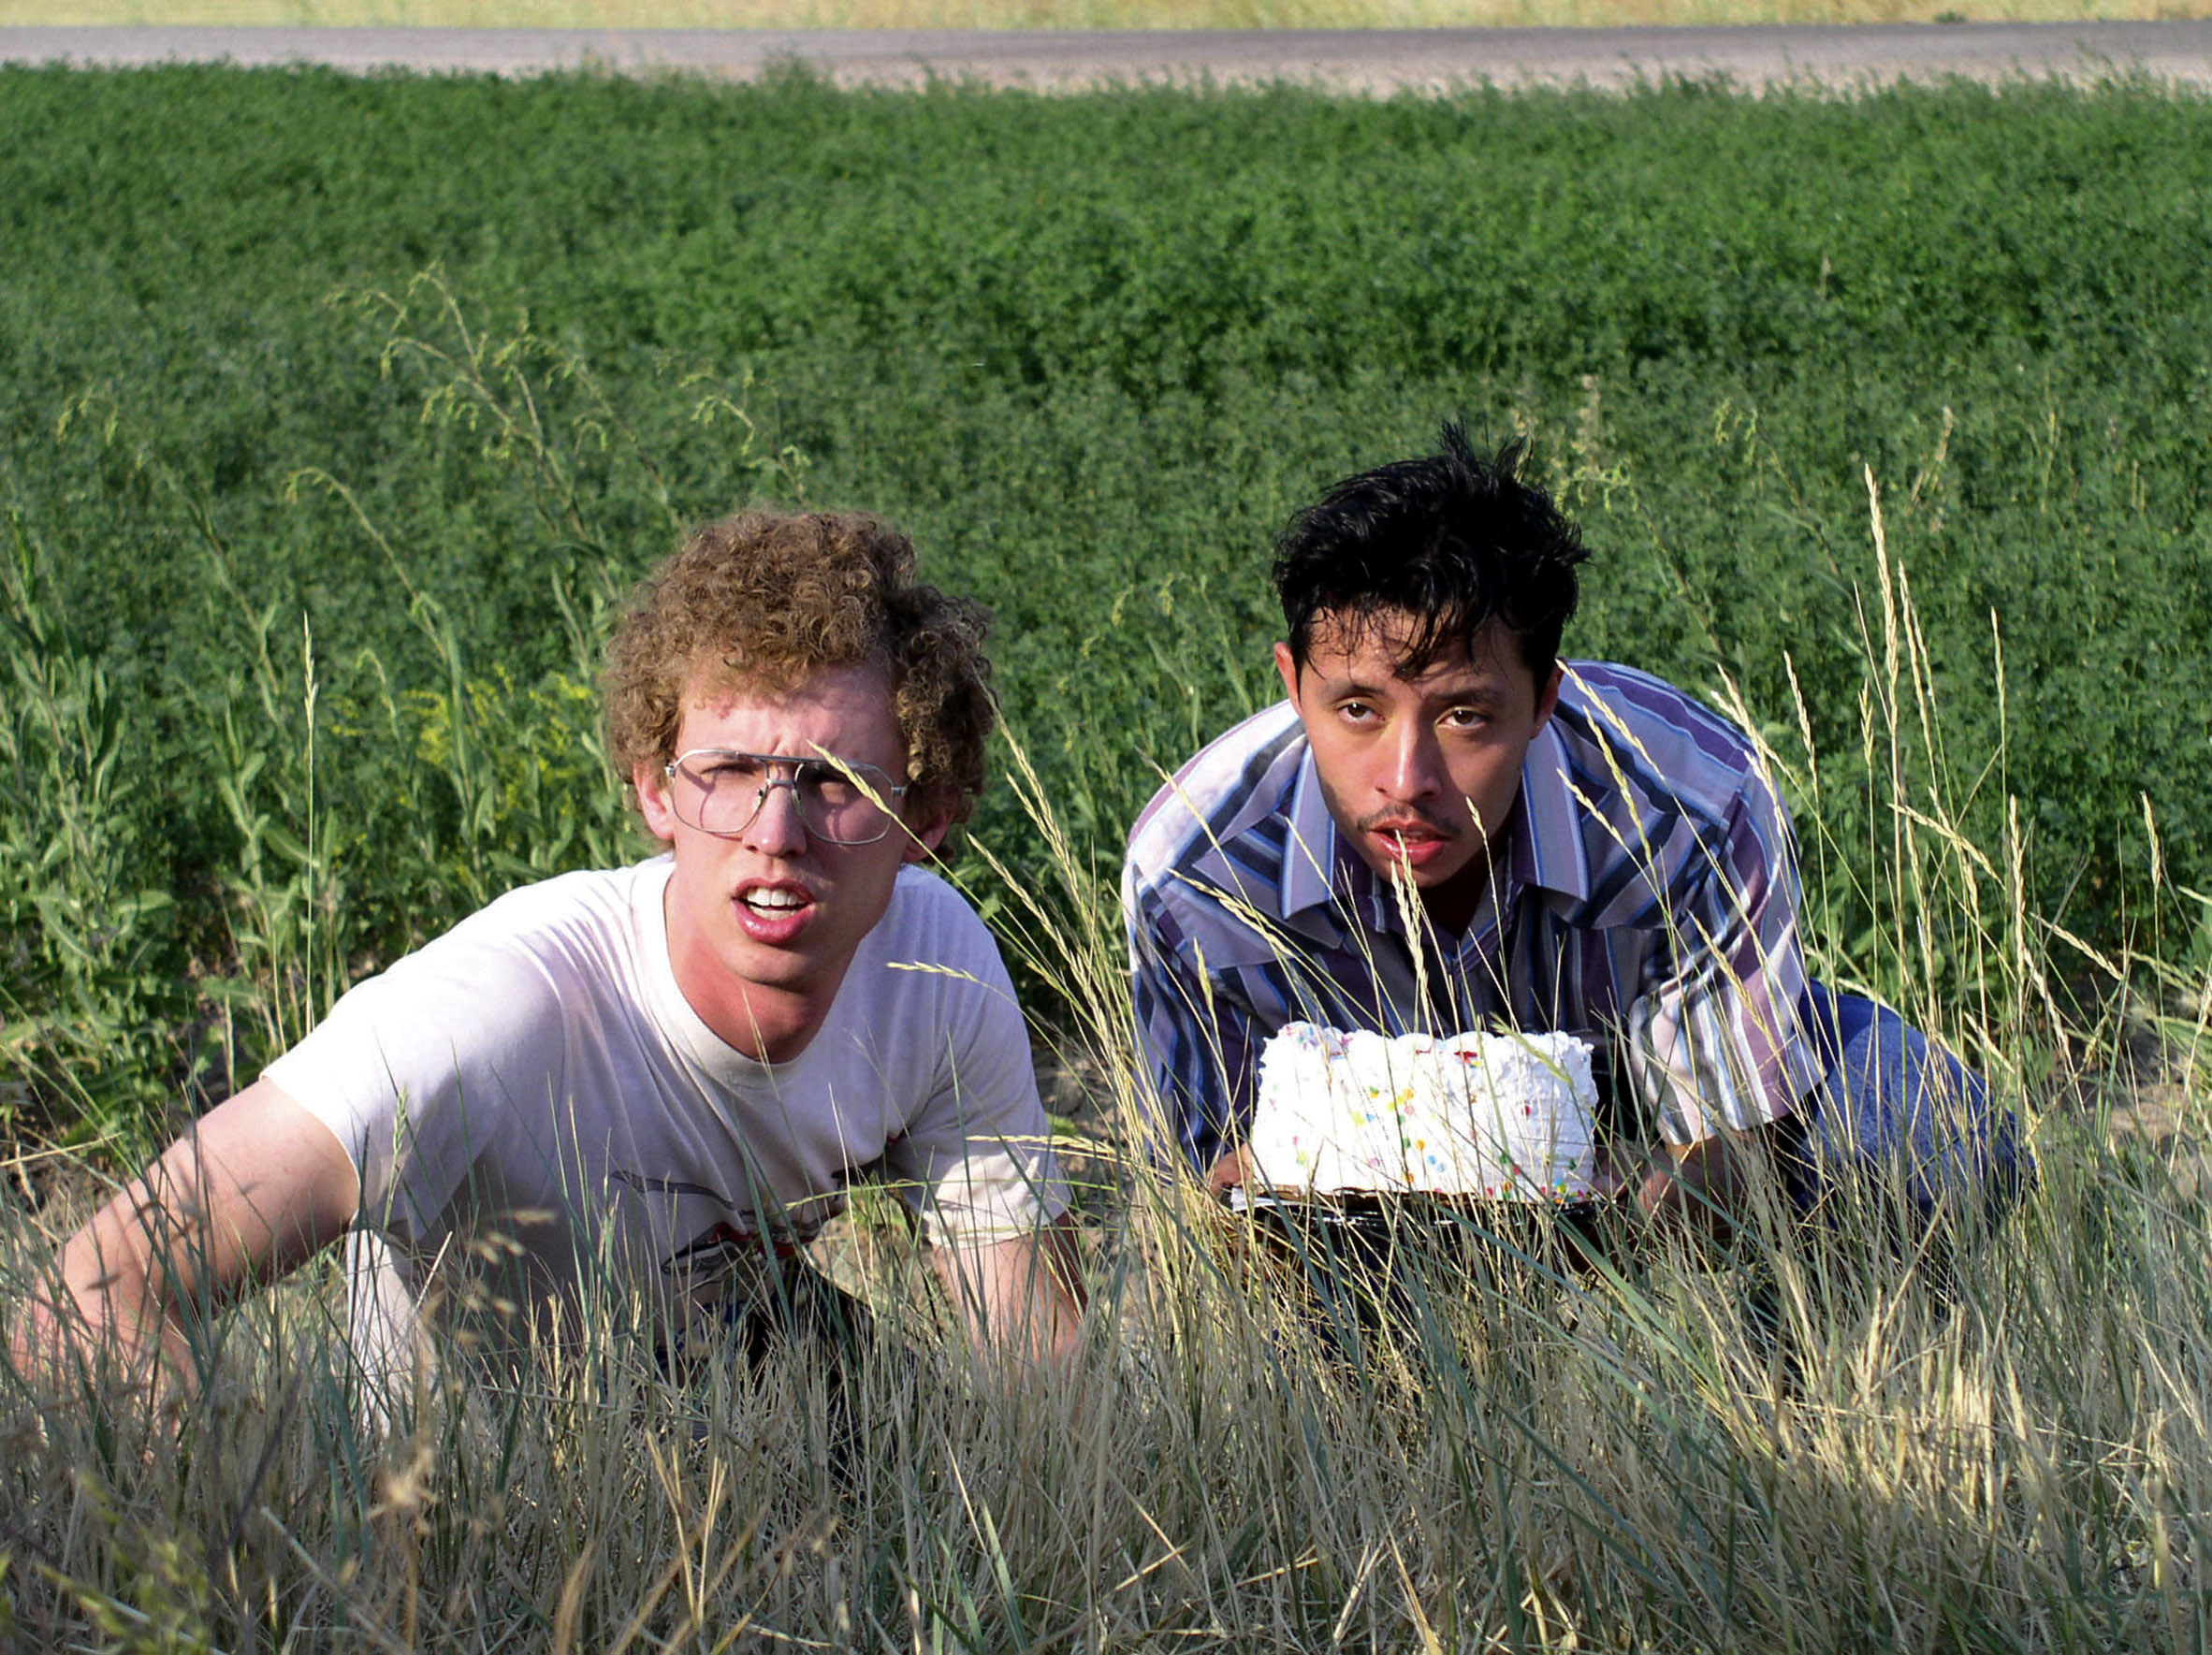 Jon Heder and Efren Ramirez hiding behind some weeds